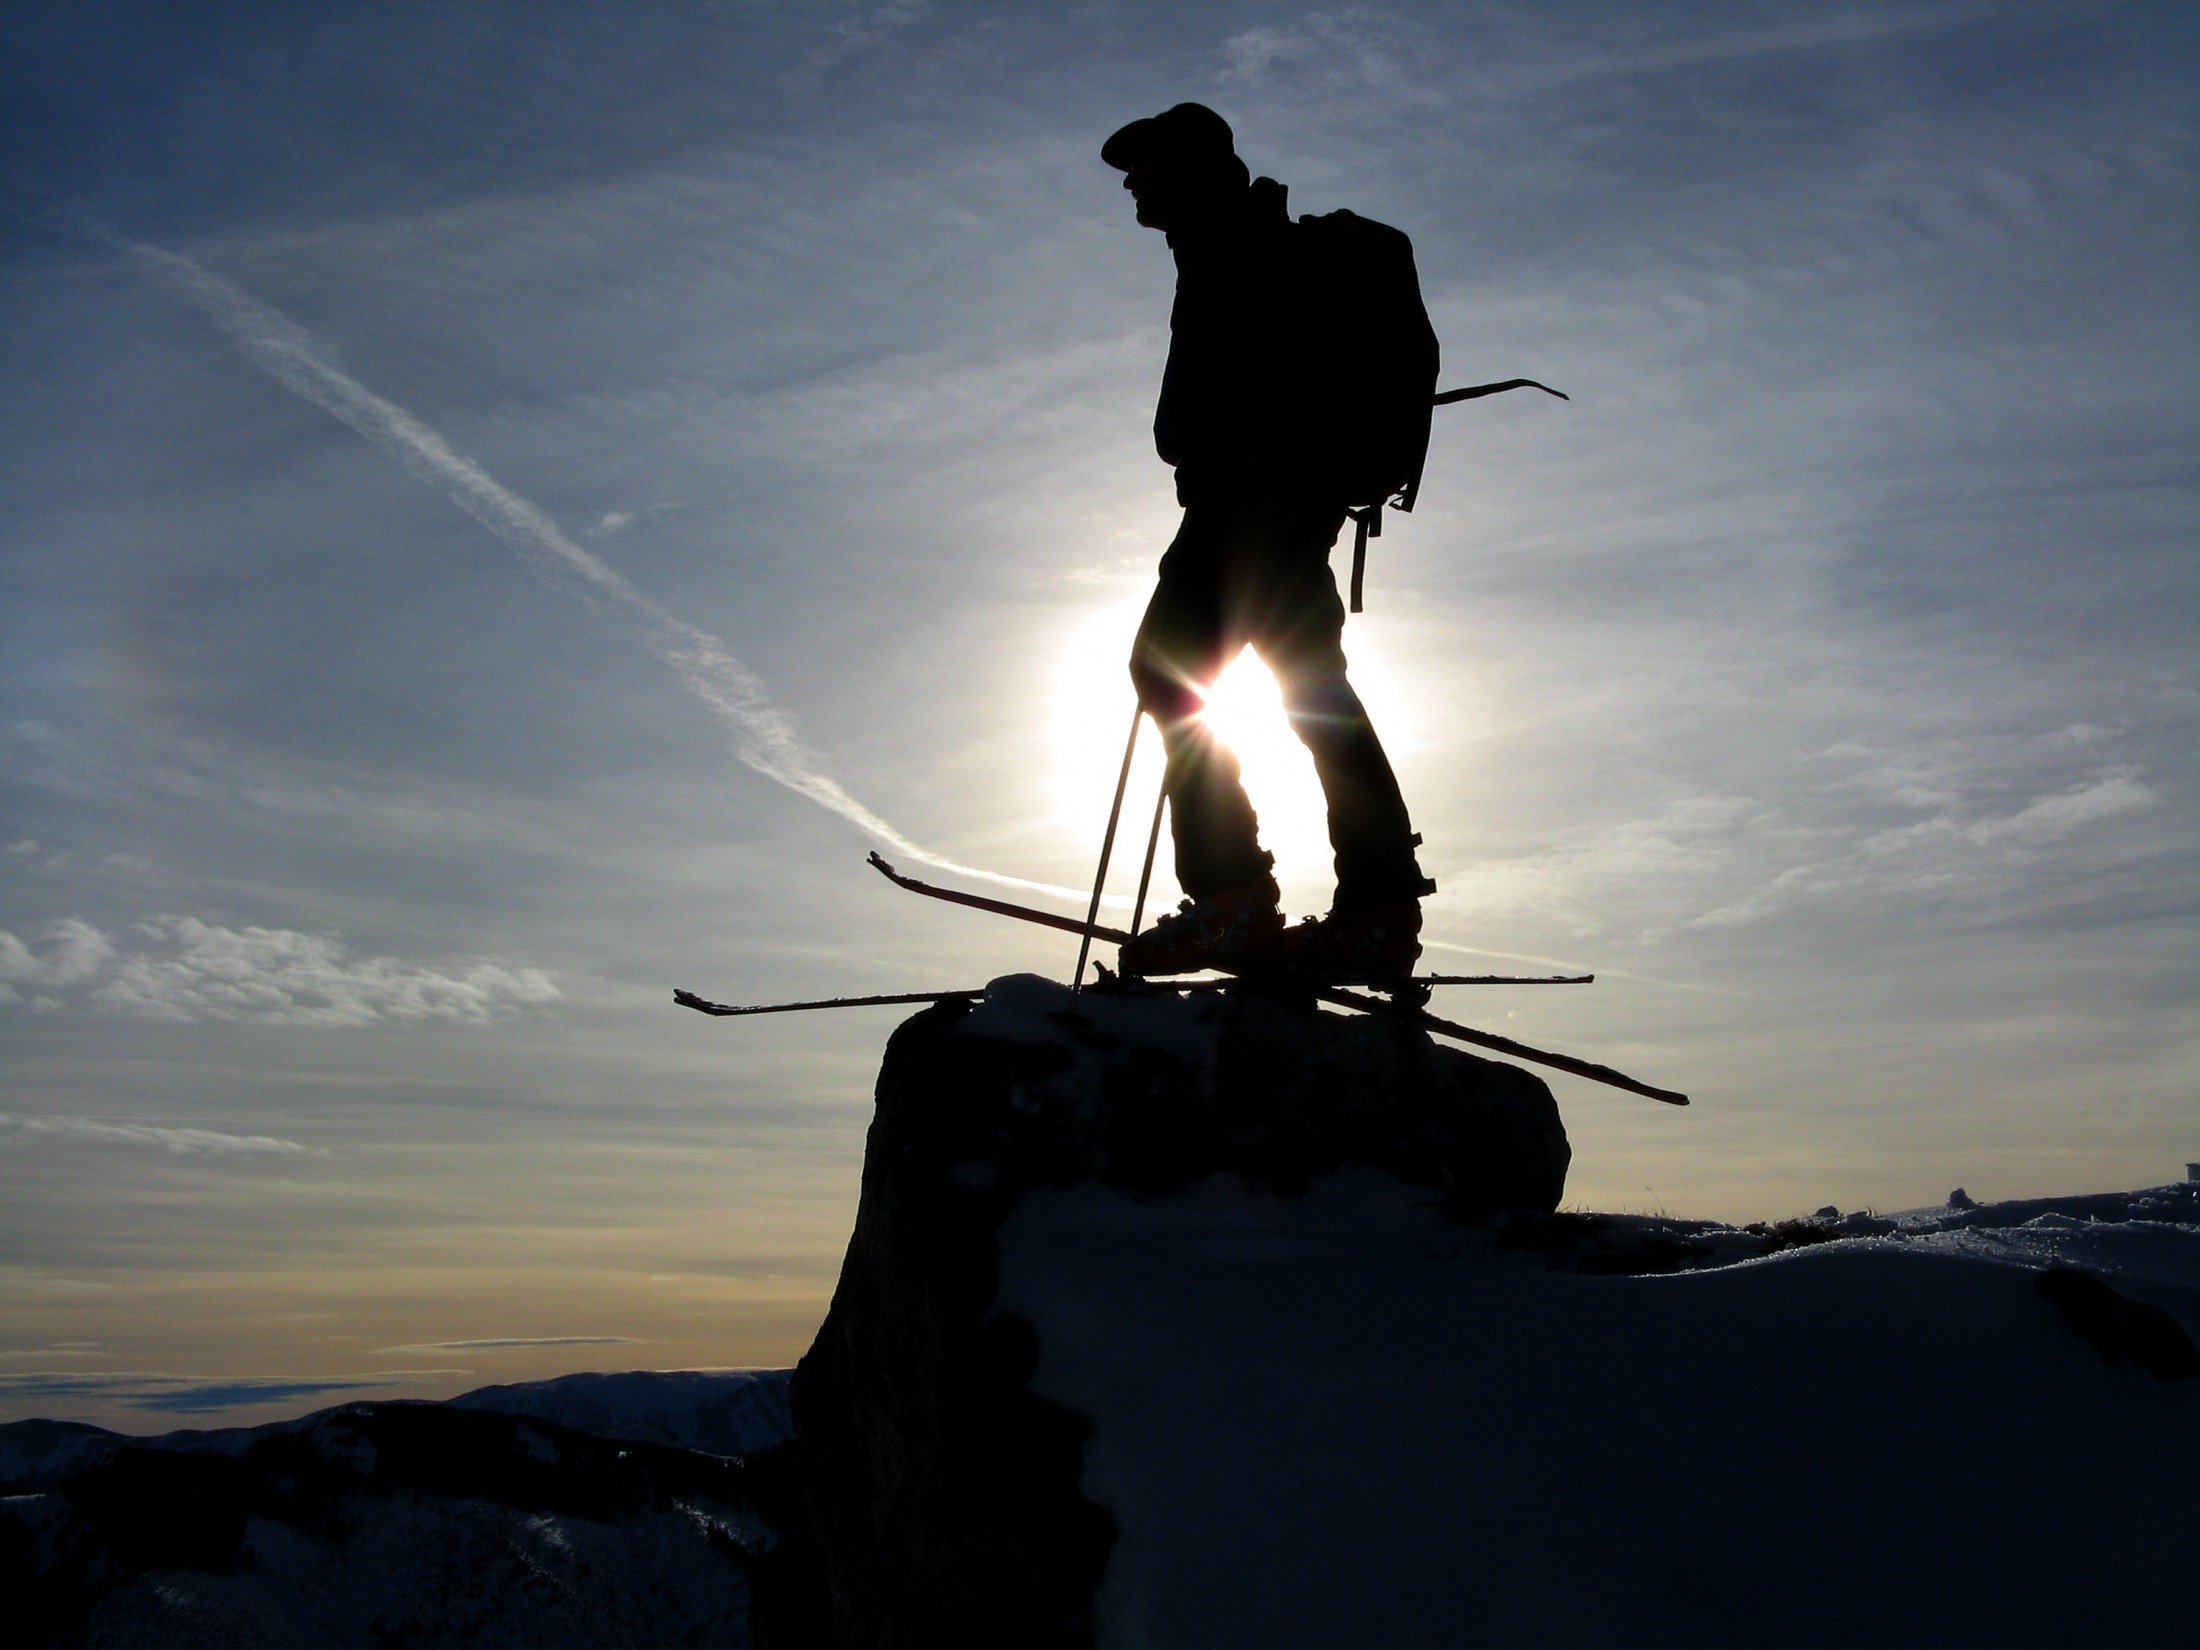 Skitouren - Einsteiger und Fortgeschrittene